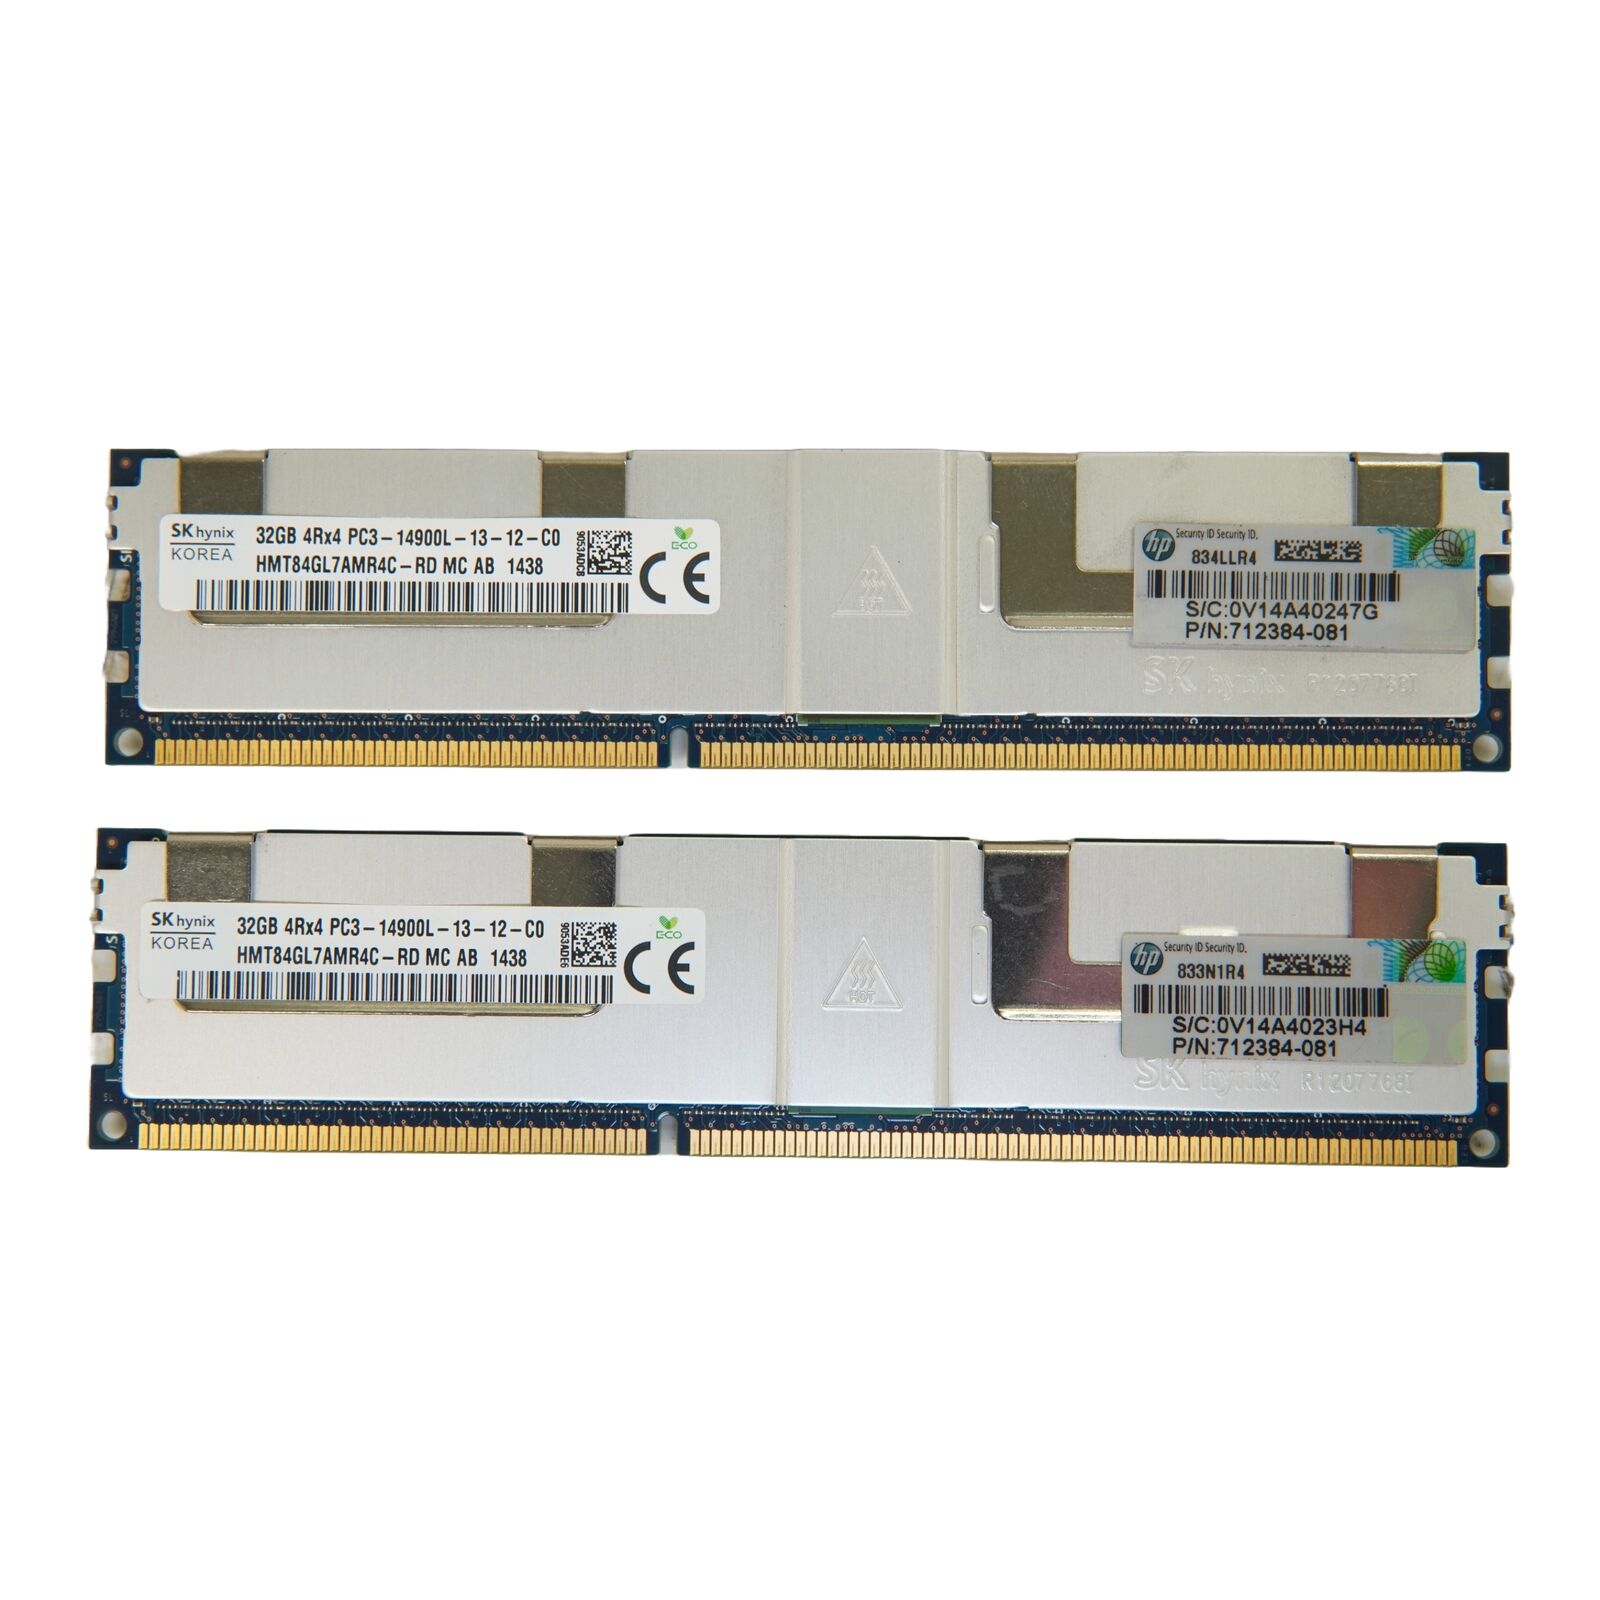 Mixed Brands 64GB (2x32GB) PC3-14900L DDR3 Registered ECC Server RAM